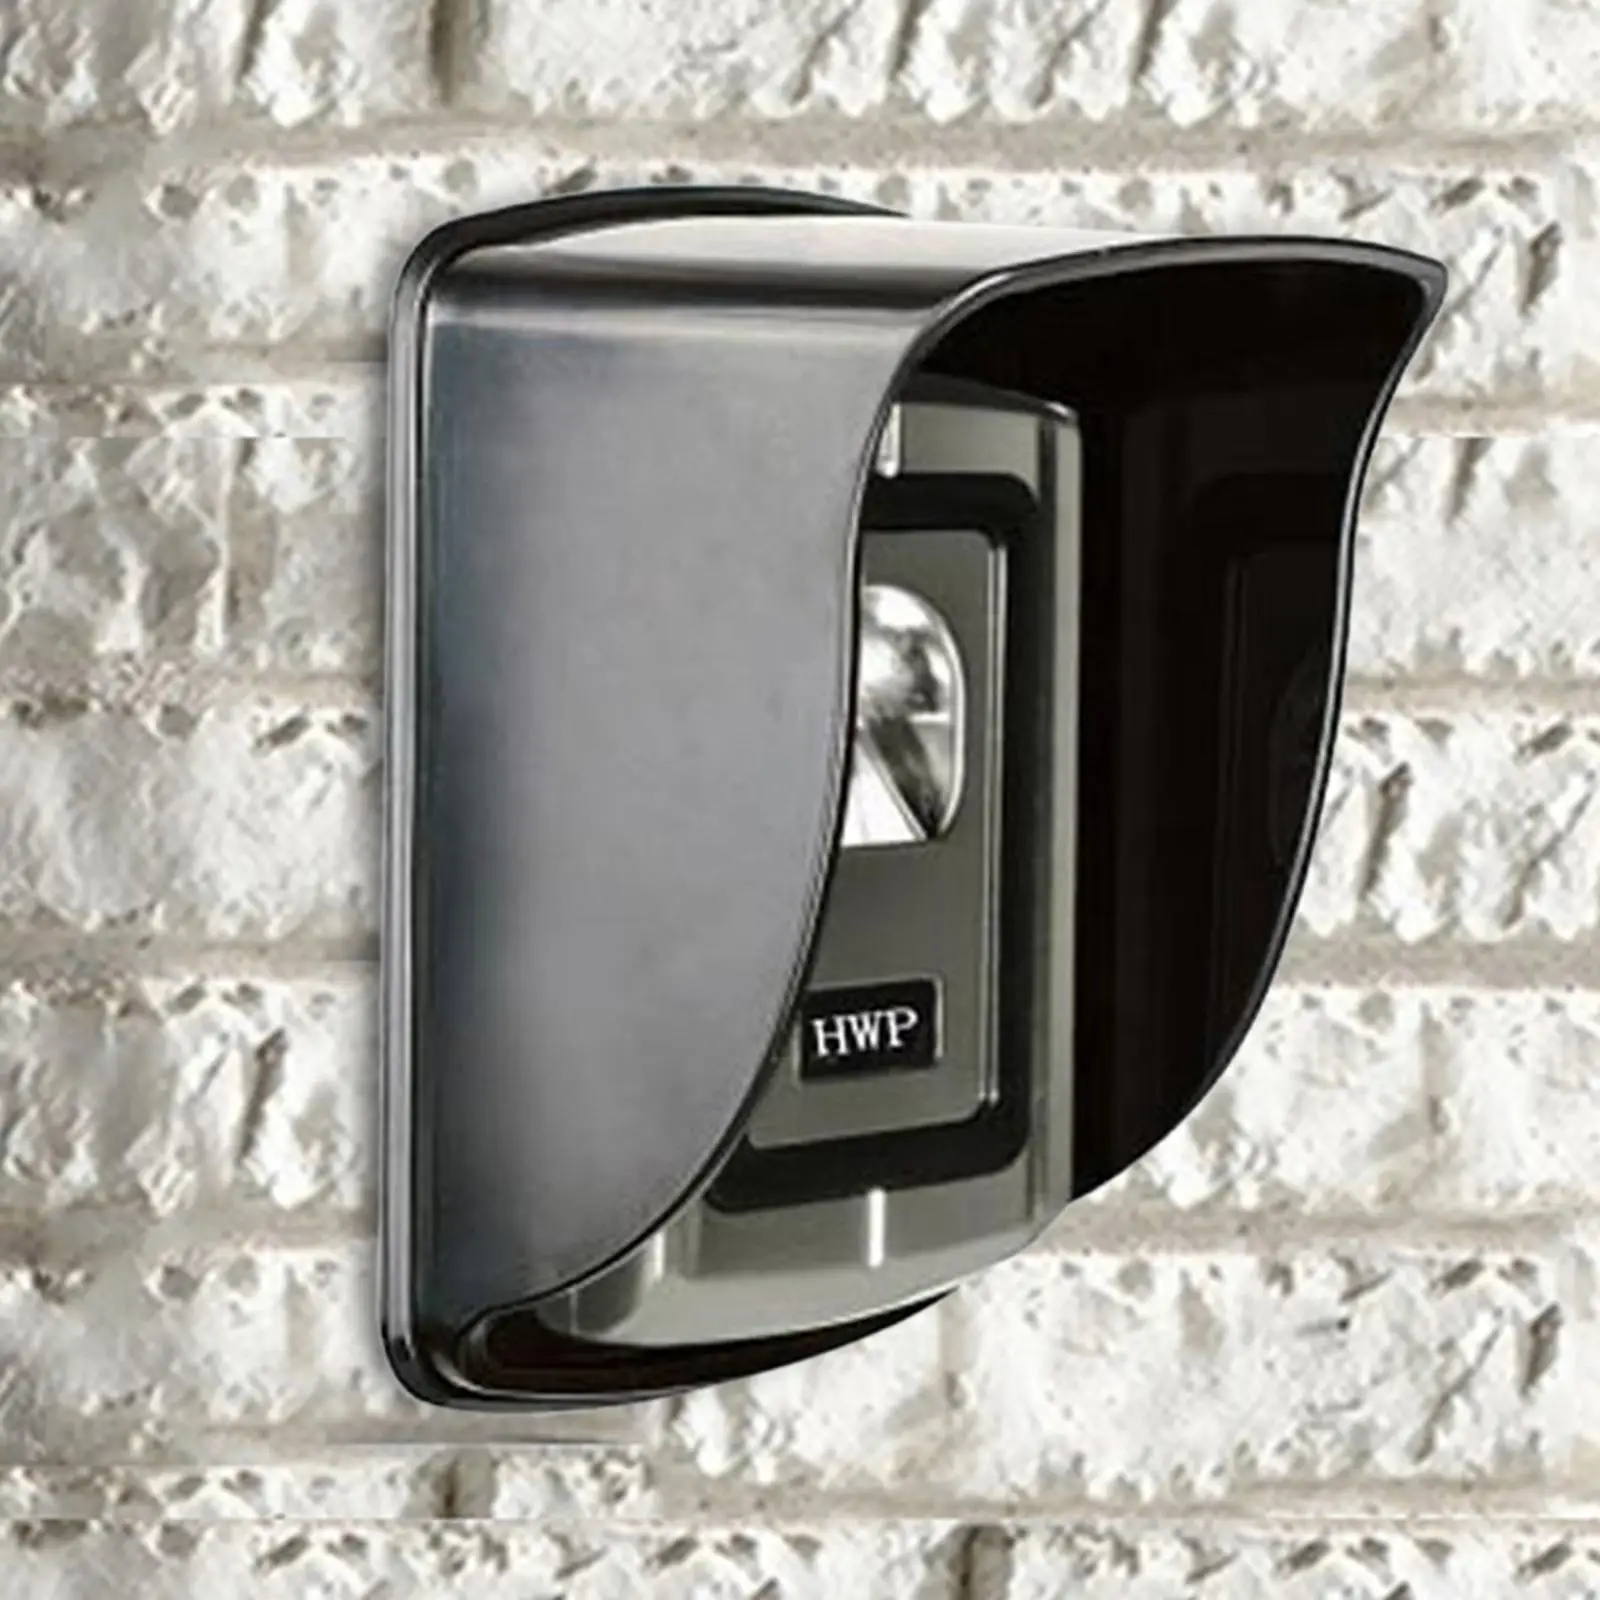 Doorbell Rain Cover Replaces Outdoor for Video Doorbell Door Phone Intercom Wireless Doorbell Bell Button Access Control Keypads